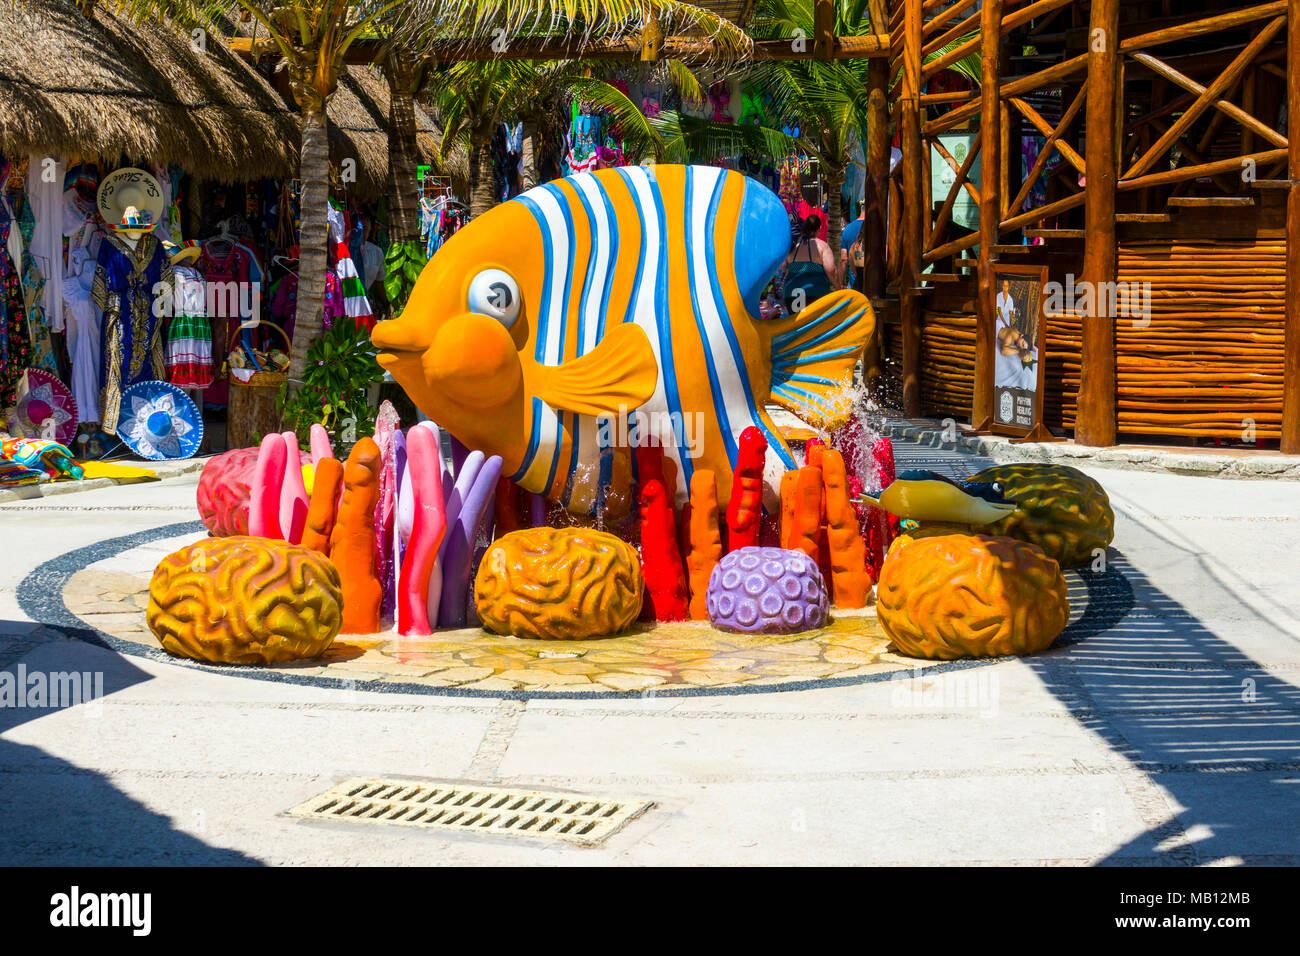 Die Kreuzfahrt Reiseziel Costa Maya Mexiko Amerika ist ein beliebter Zwischenstopp auf der westlichen Karibik Kreuzfahrt Schiff Tour und bietet Einkaufsmöglichkeiten und andere sightseein Stockfoto